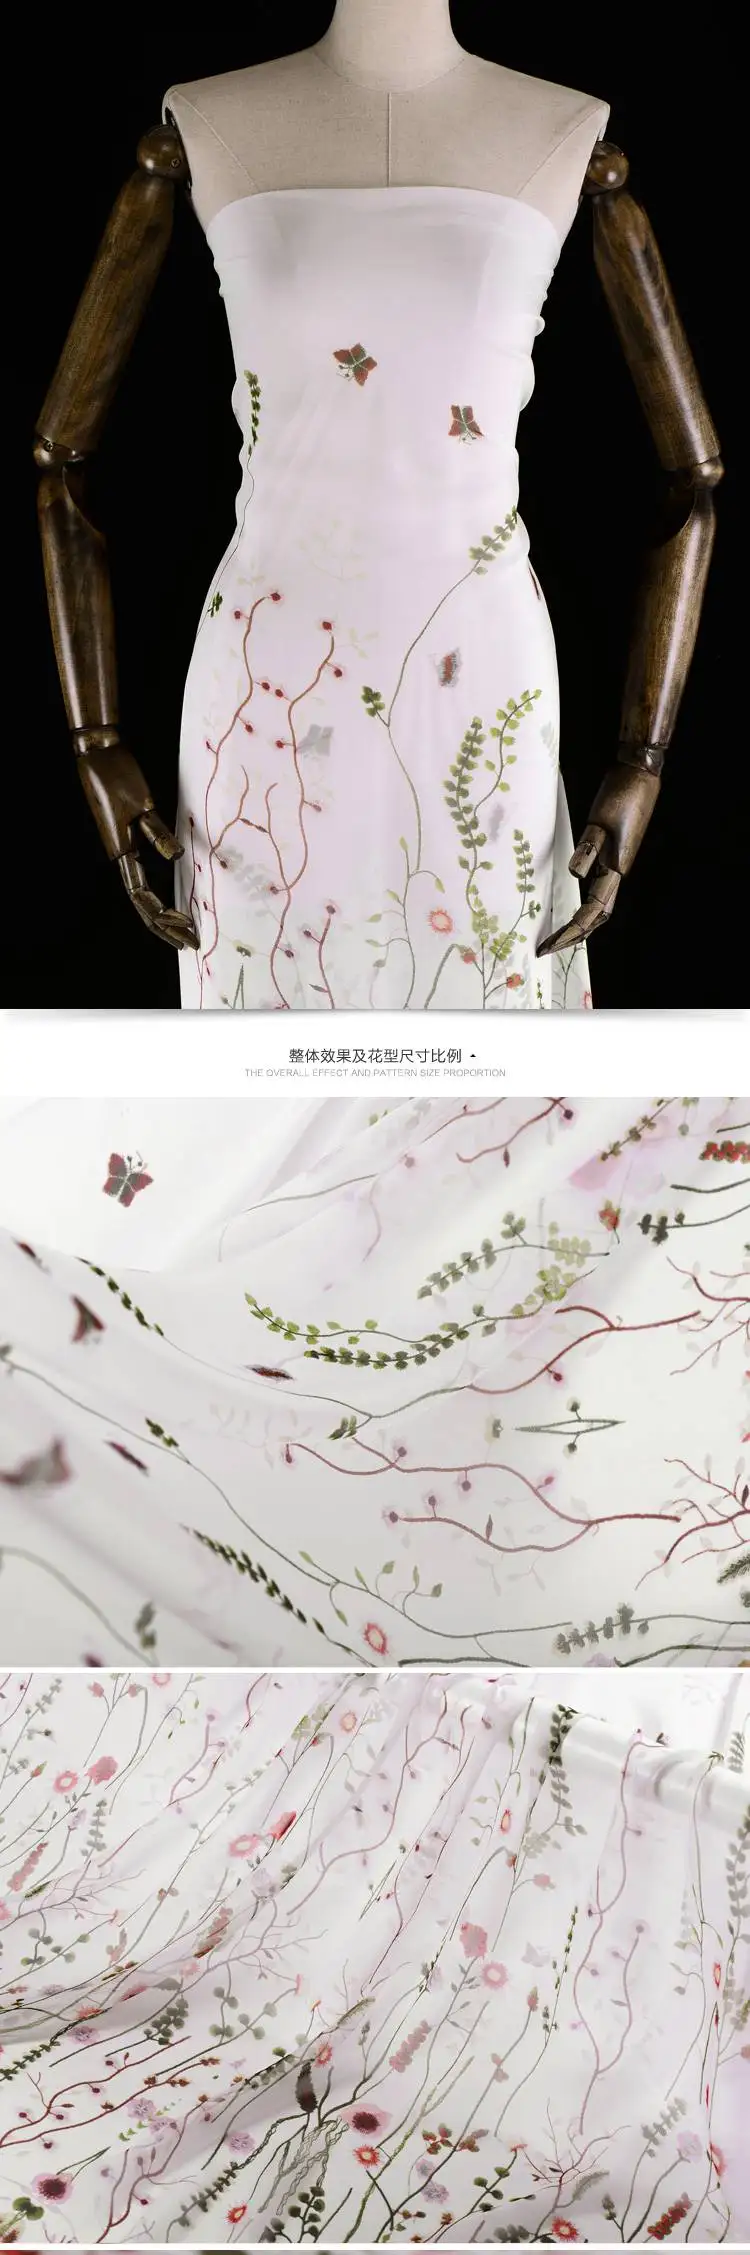 Позиционирование цифровая струйная ткань креп-Жоржет Летнее тонкое перспективное платье с шарфом рубашка китайская шелковая ткань тюль ткань